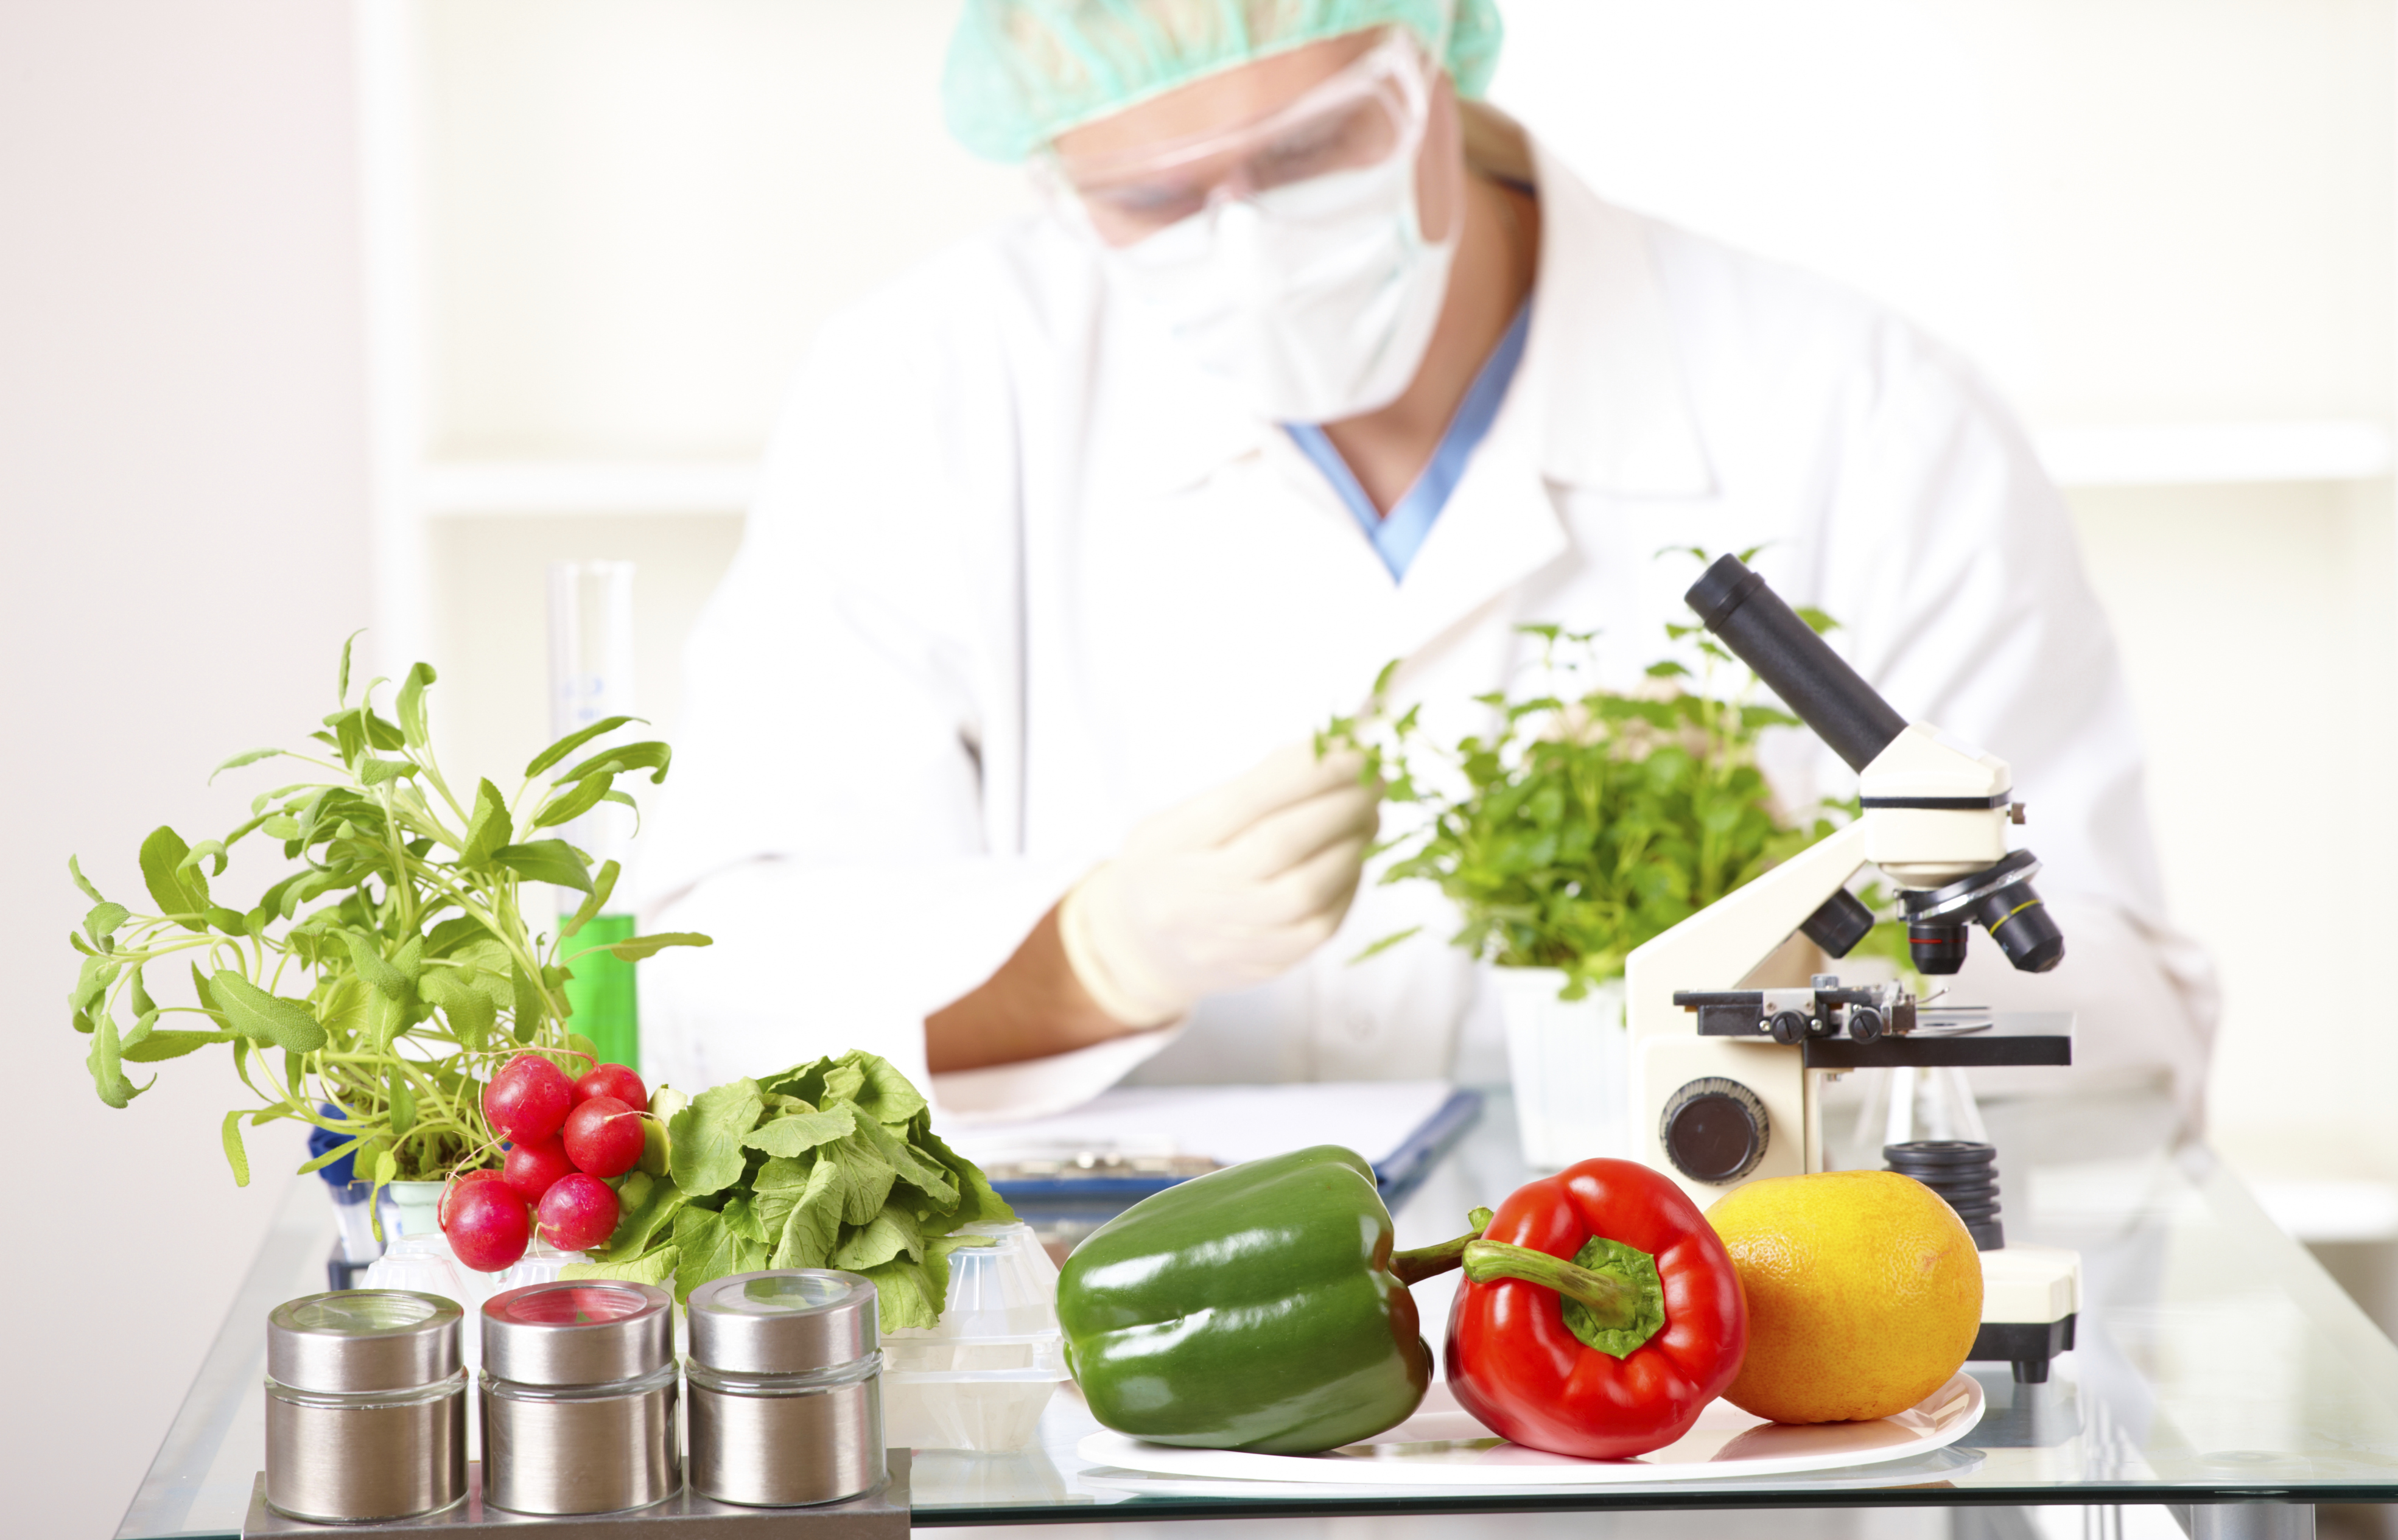 Пищевая безопасность рф. Биотехнология пищевых продуктов. Экспертиза овощей. Экспертиза пищевых продуктов. Инженерия пищевых продуктов.